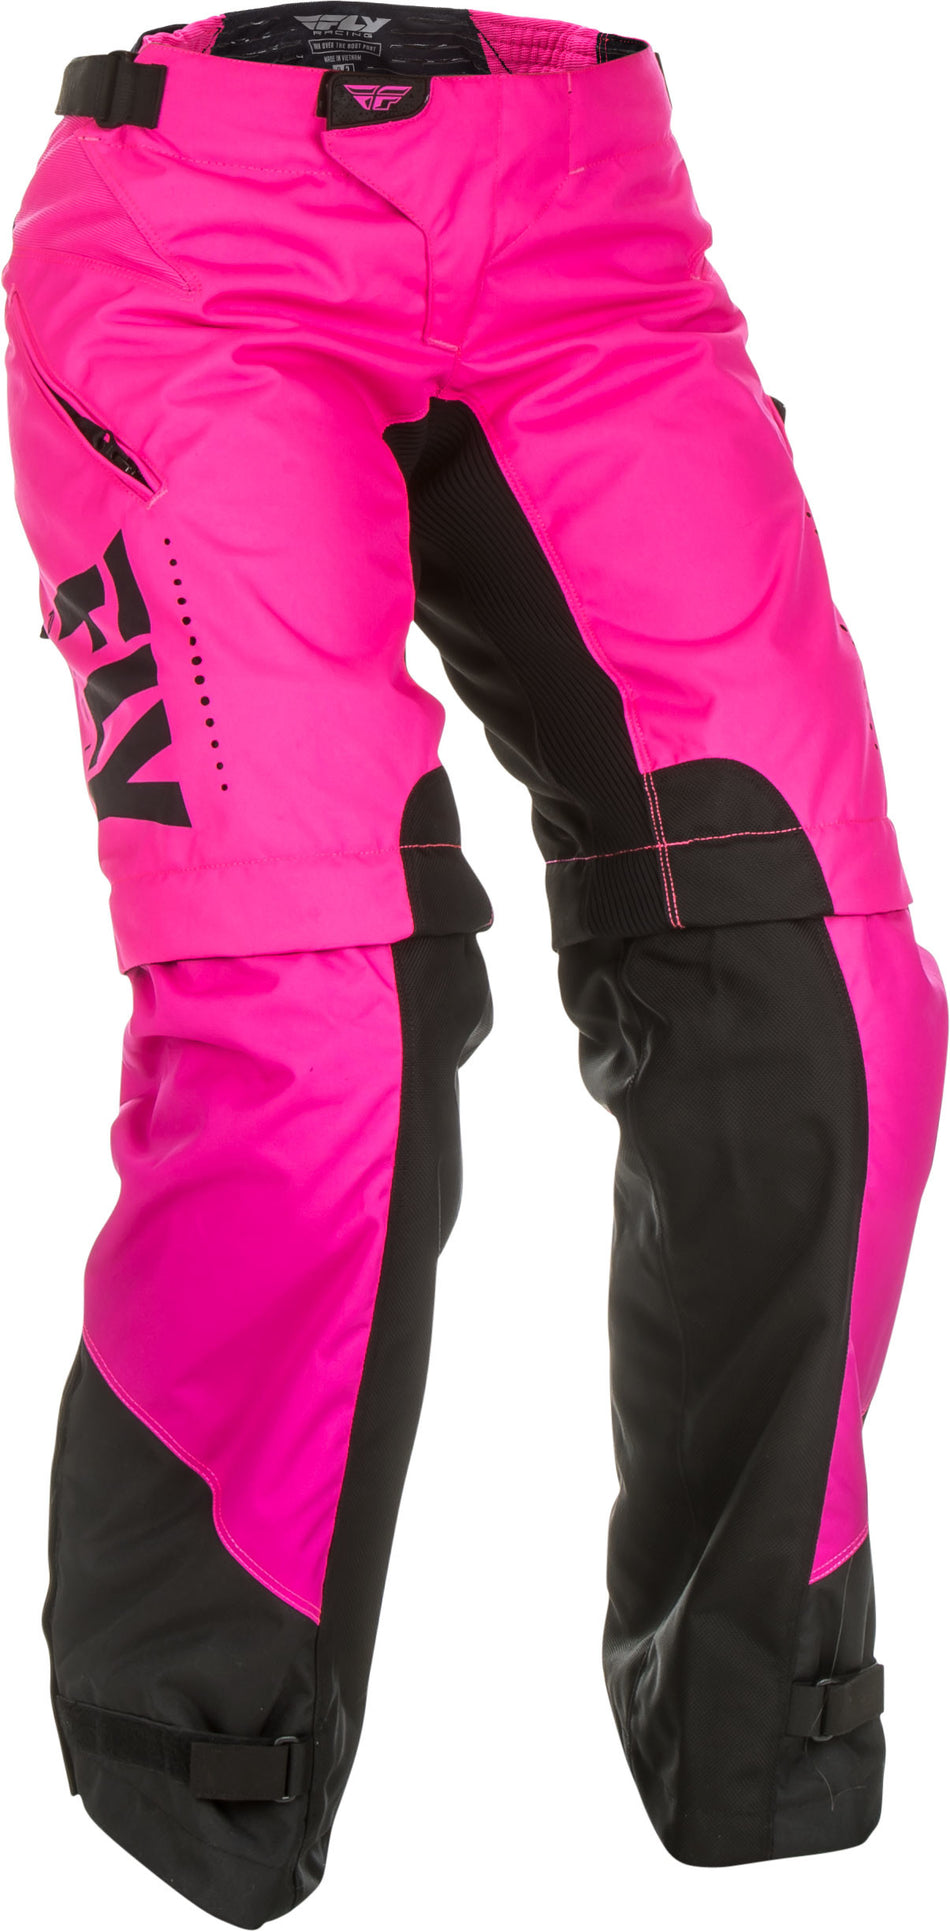 FLY RACING Women's Over Boot Pants Neon Pink/Black Sz 00/02 372-65804